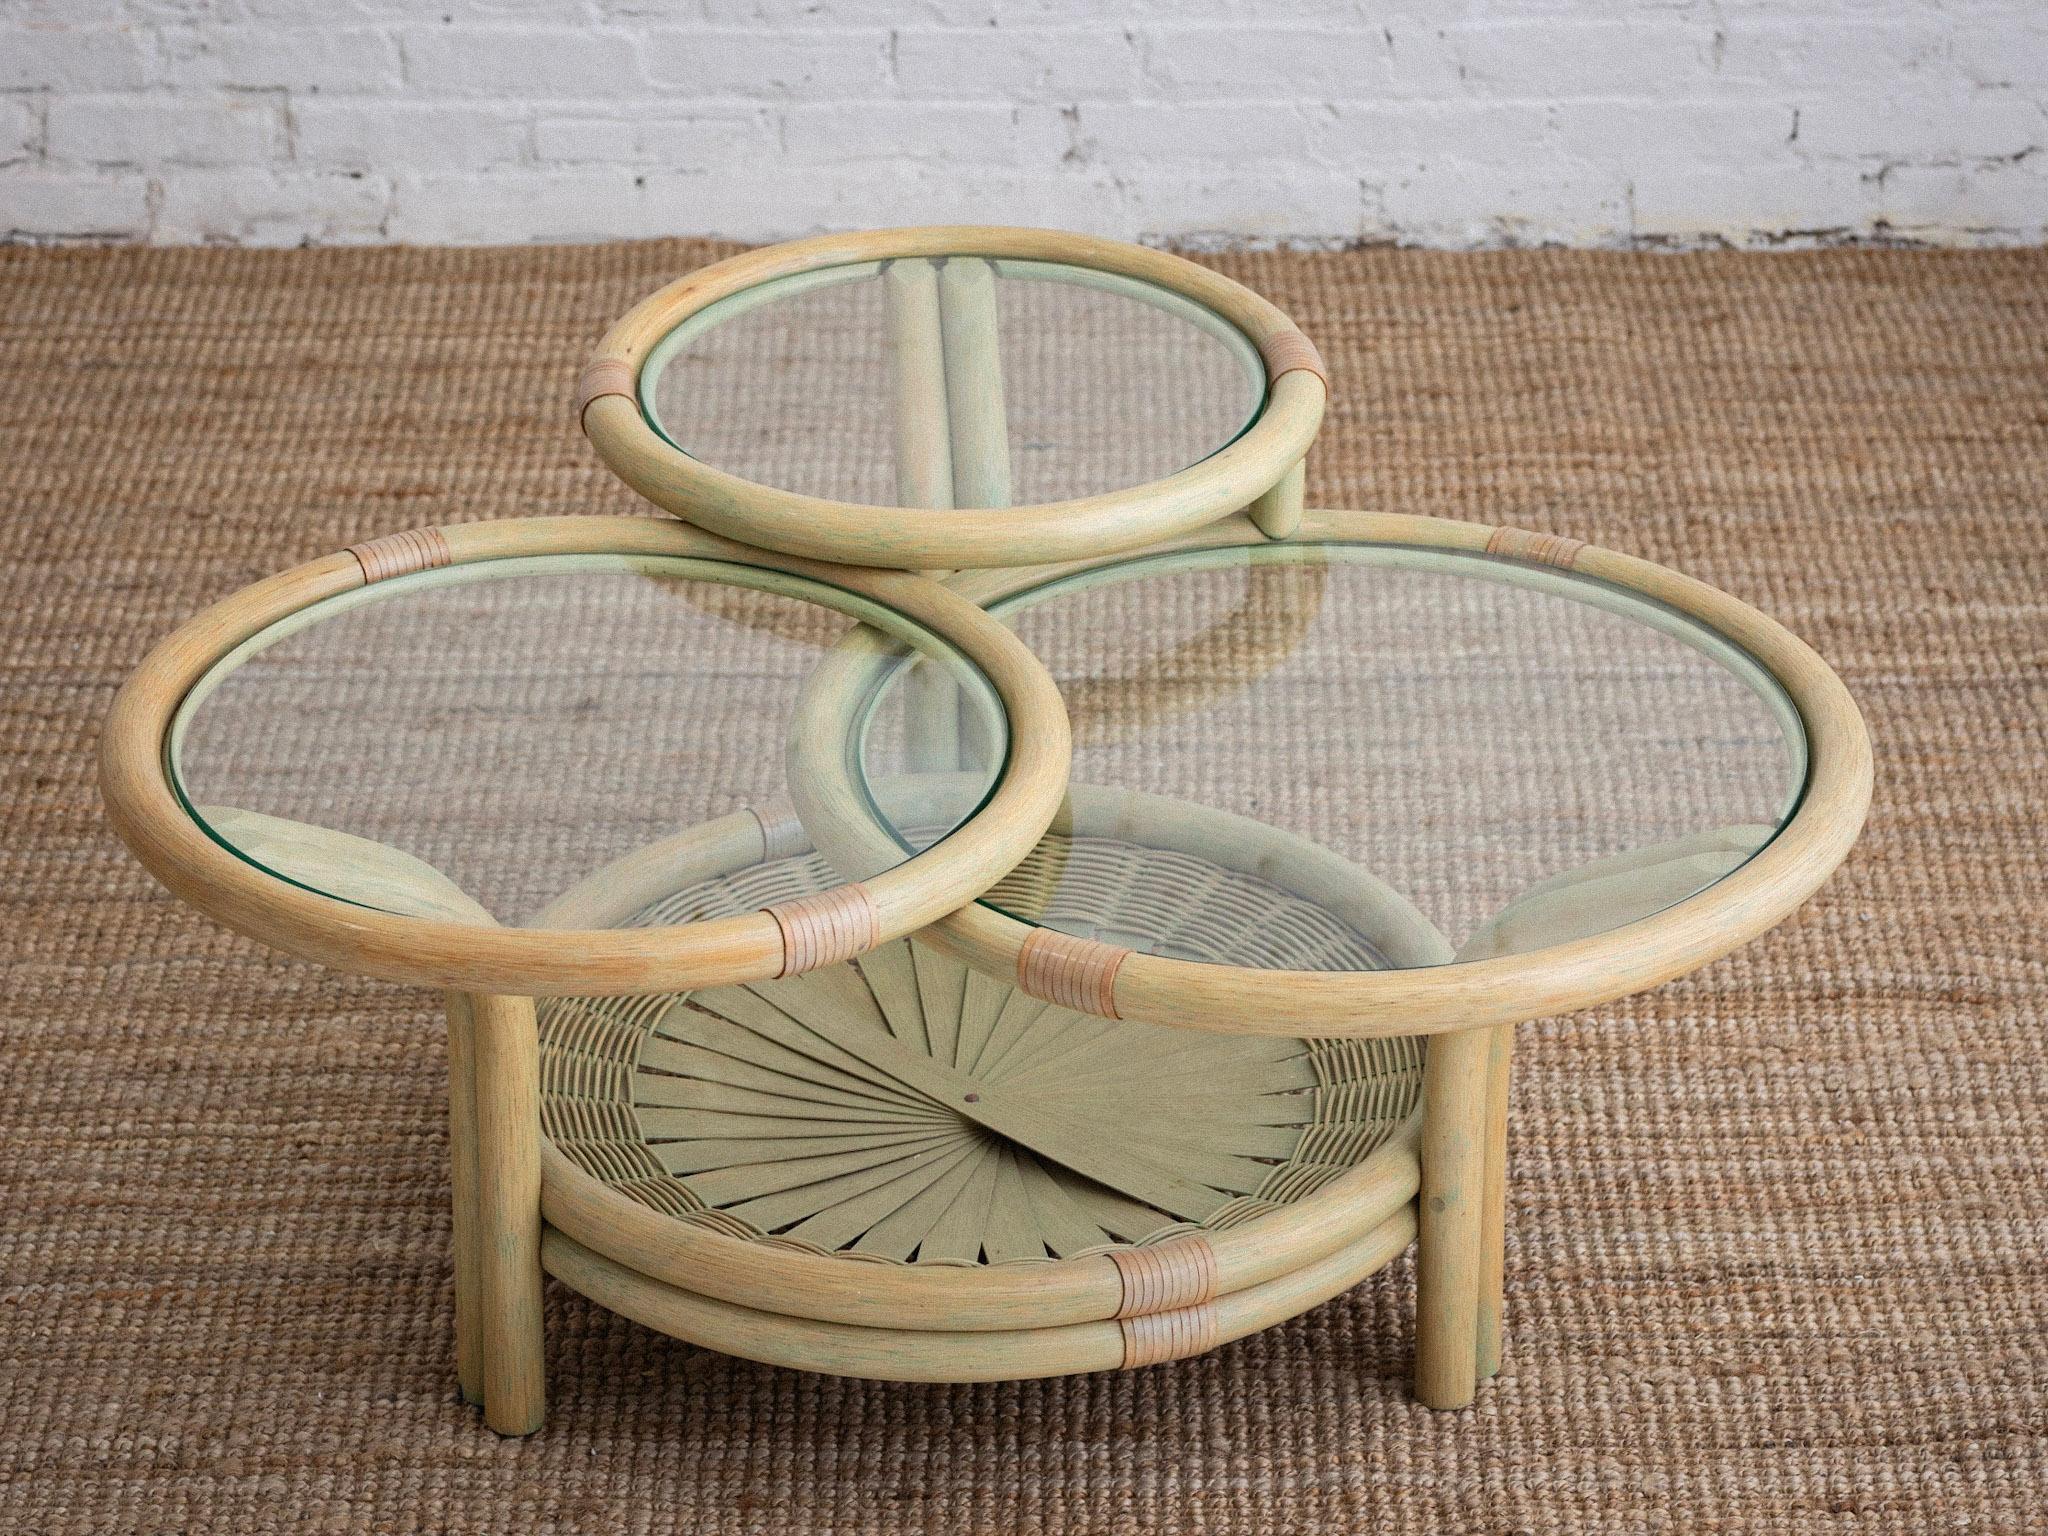 Une table basse en bambou et verre. Trois étages circulaires avec dessus en verre. Lavage vert pastel. Détail de l'éventail en bambou dans la base. Provenant du nord de l'Italie.